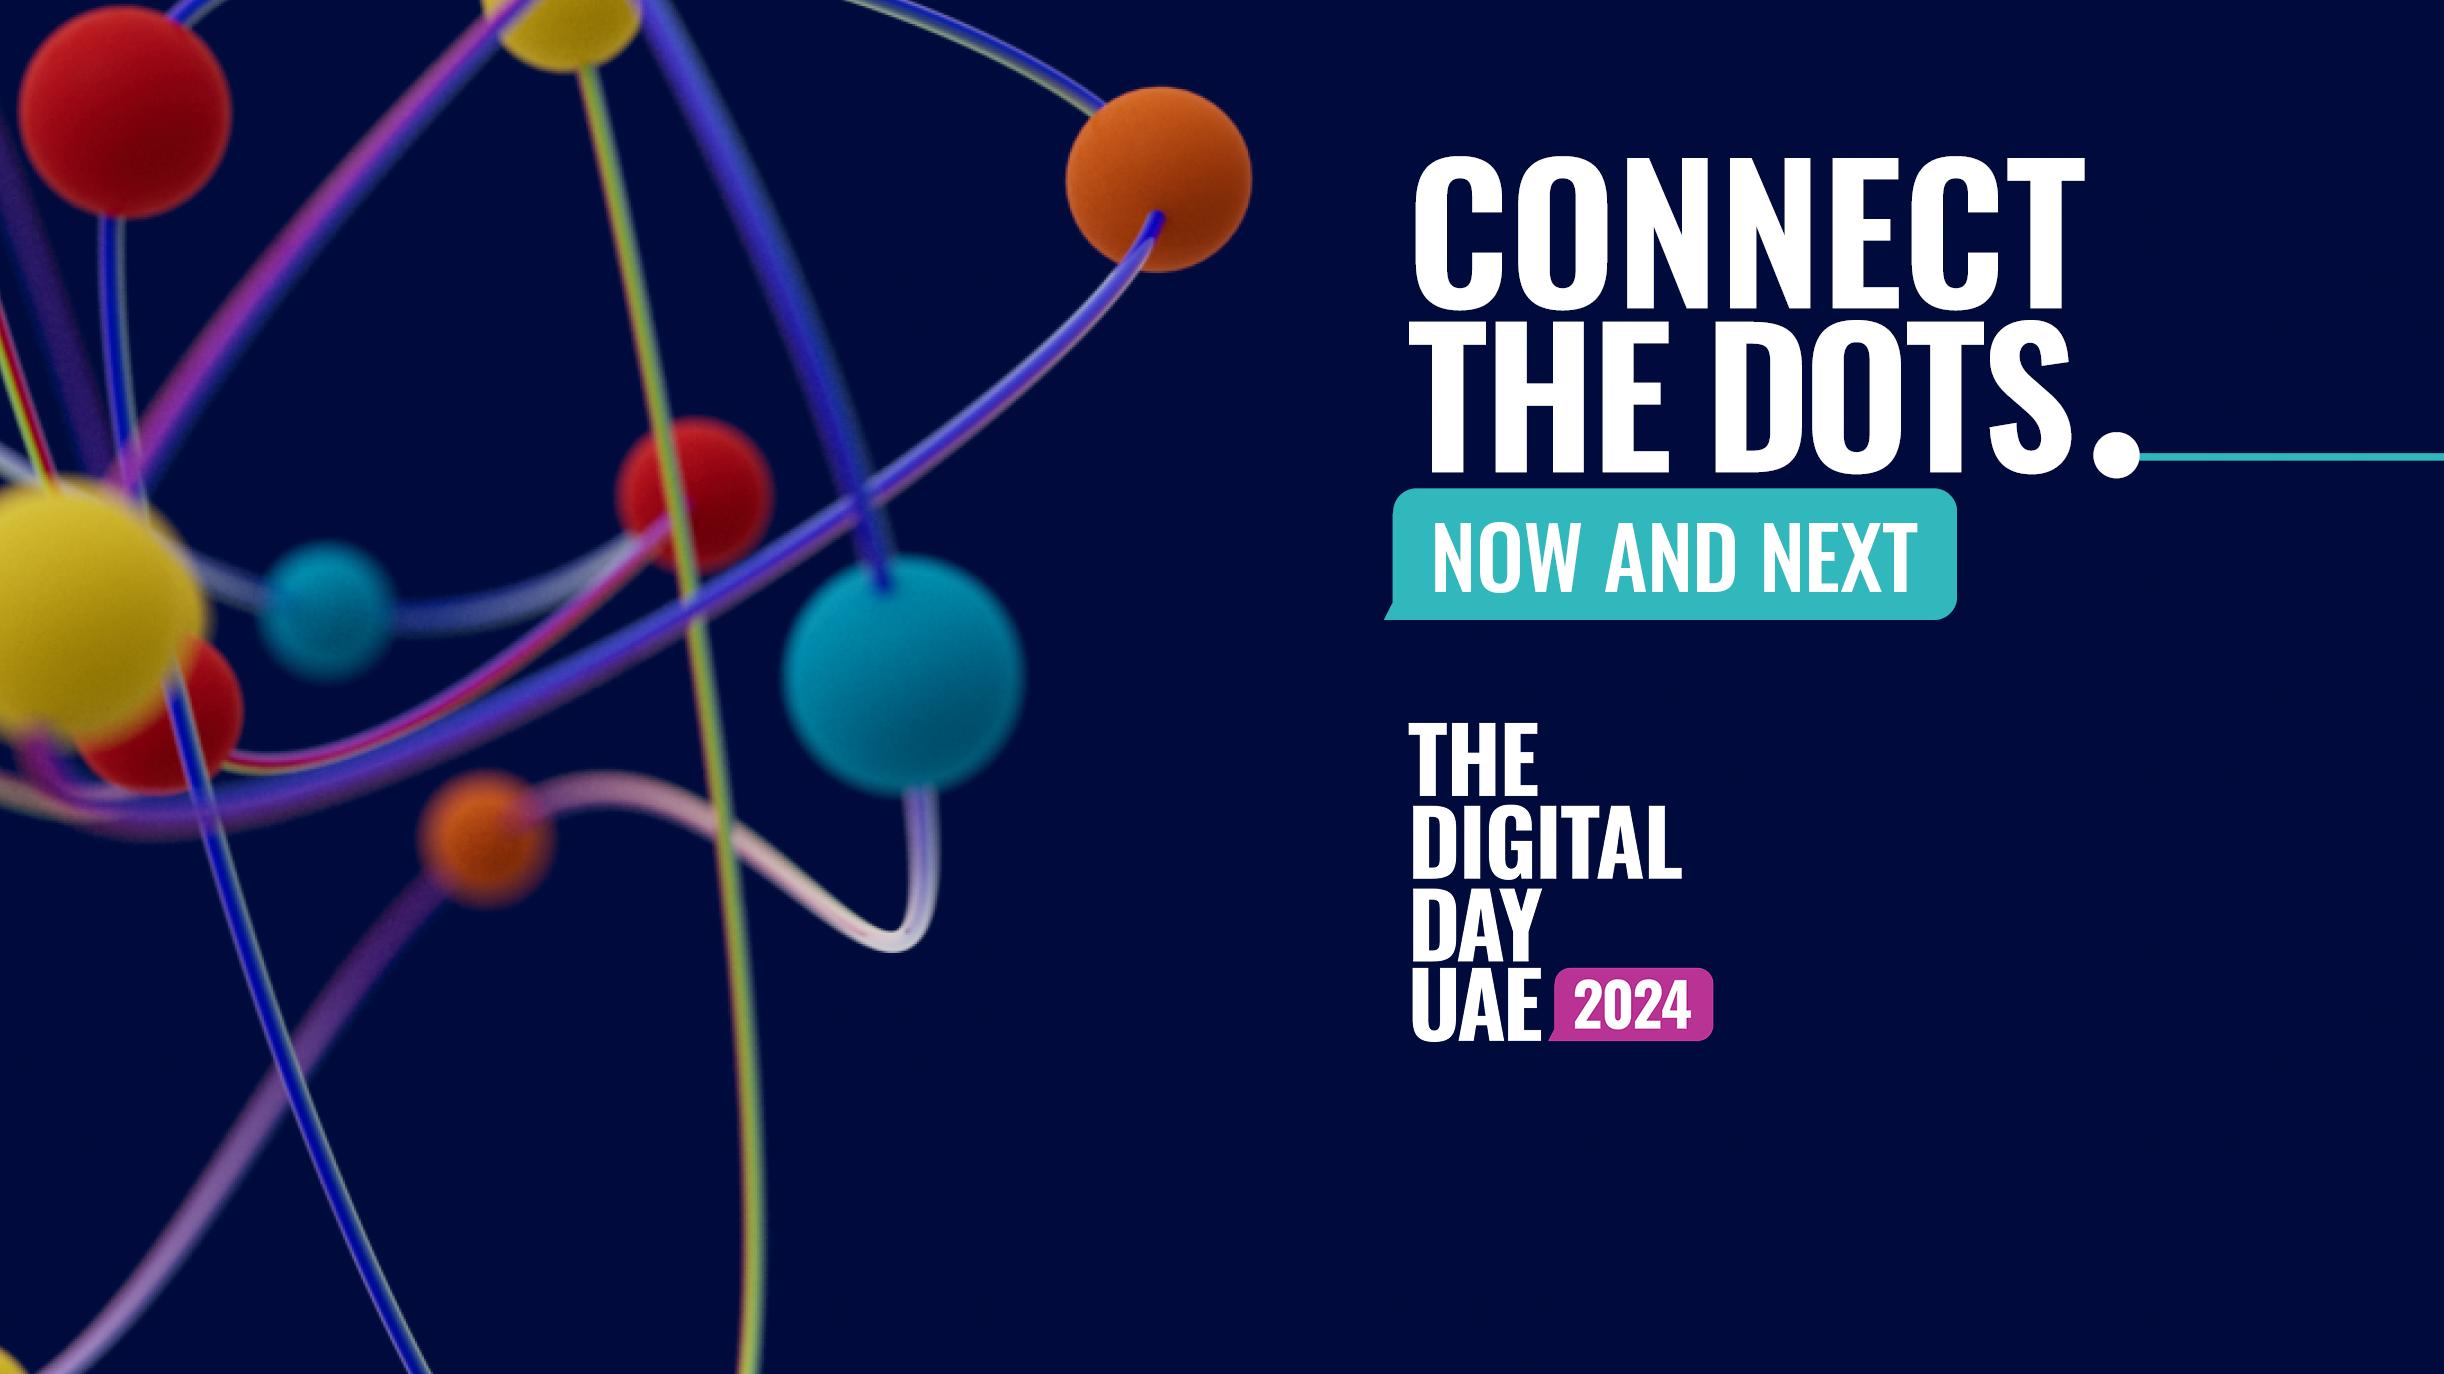 Digital Day UAE 2024